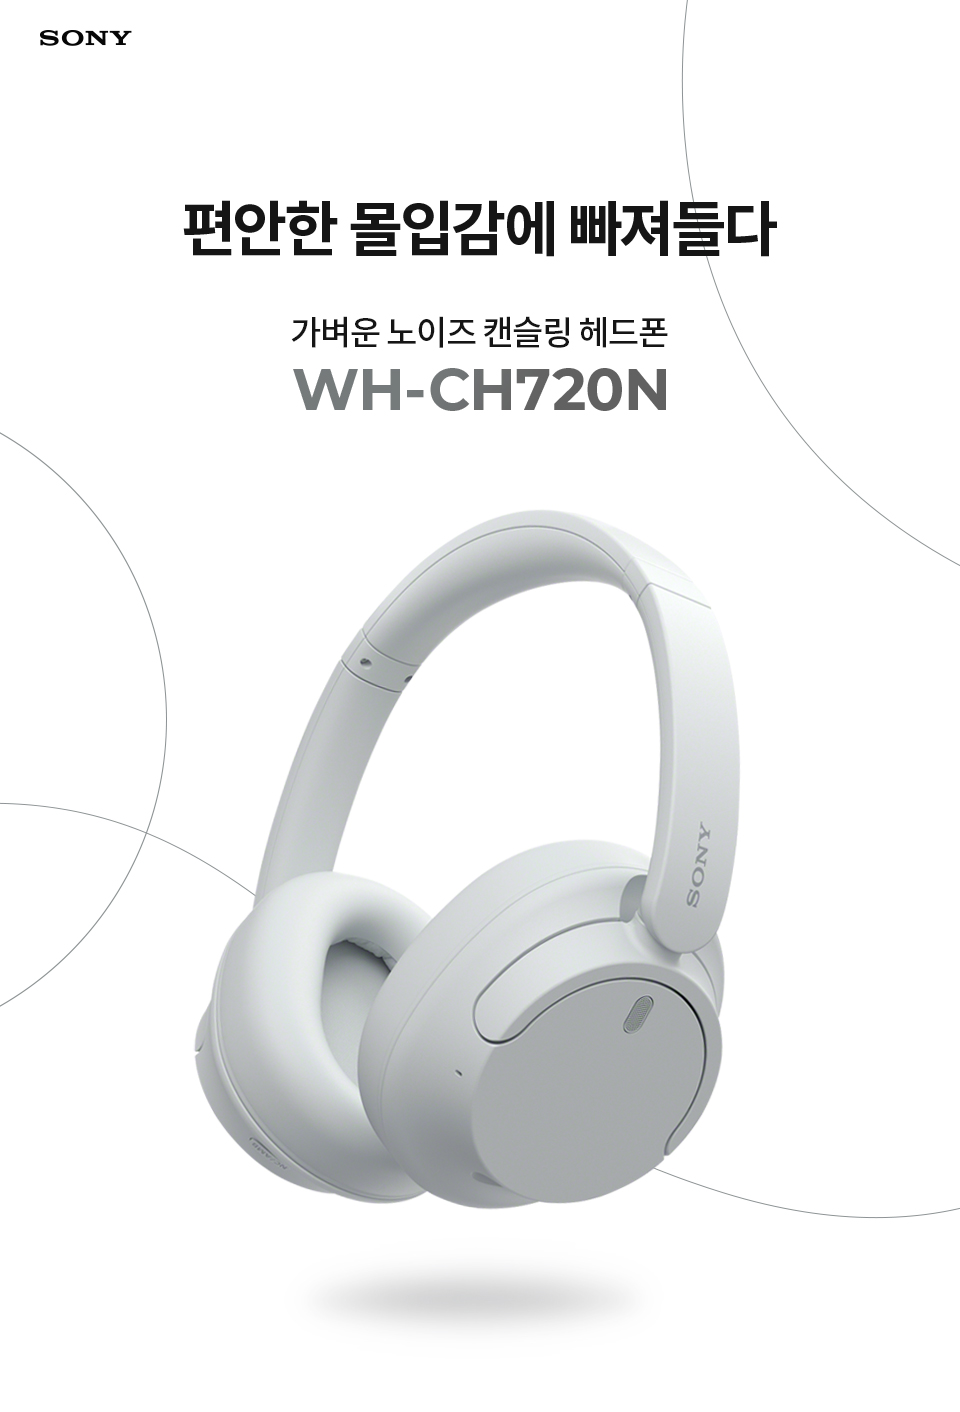 WH-CH720N